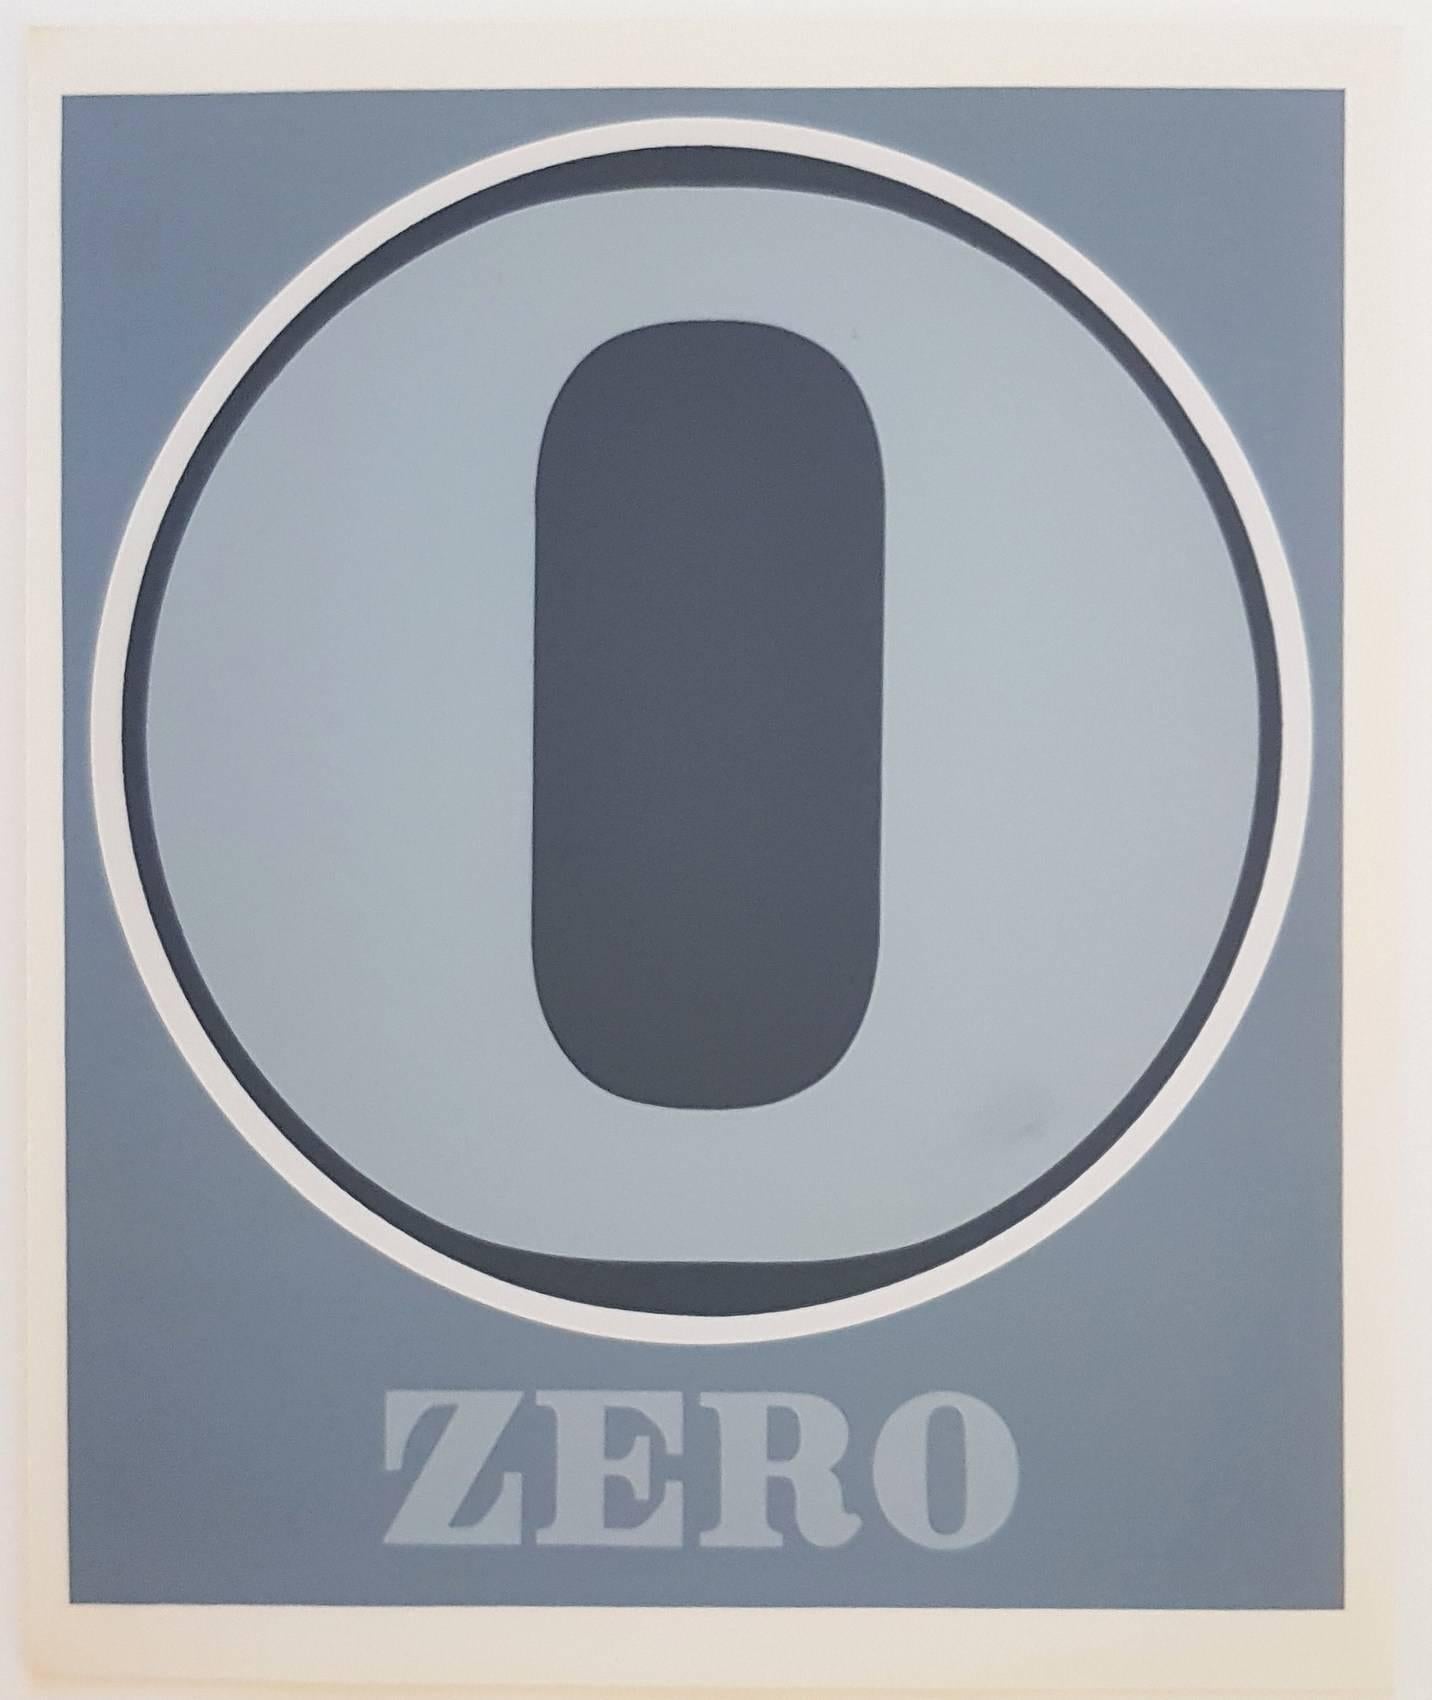 Nummernnummern-Suite - Zero – Print von Robert Indiana